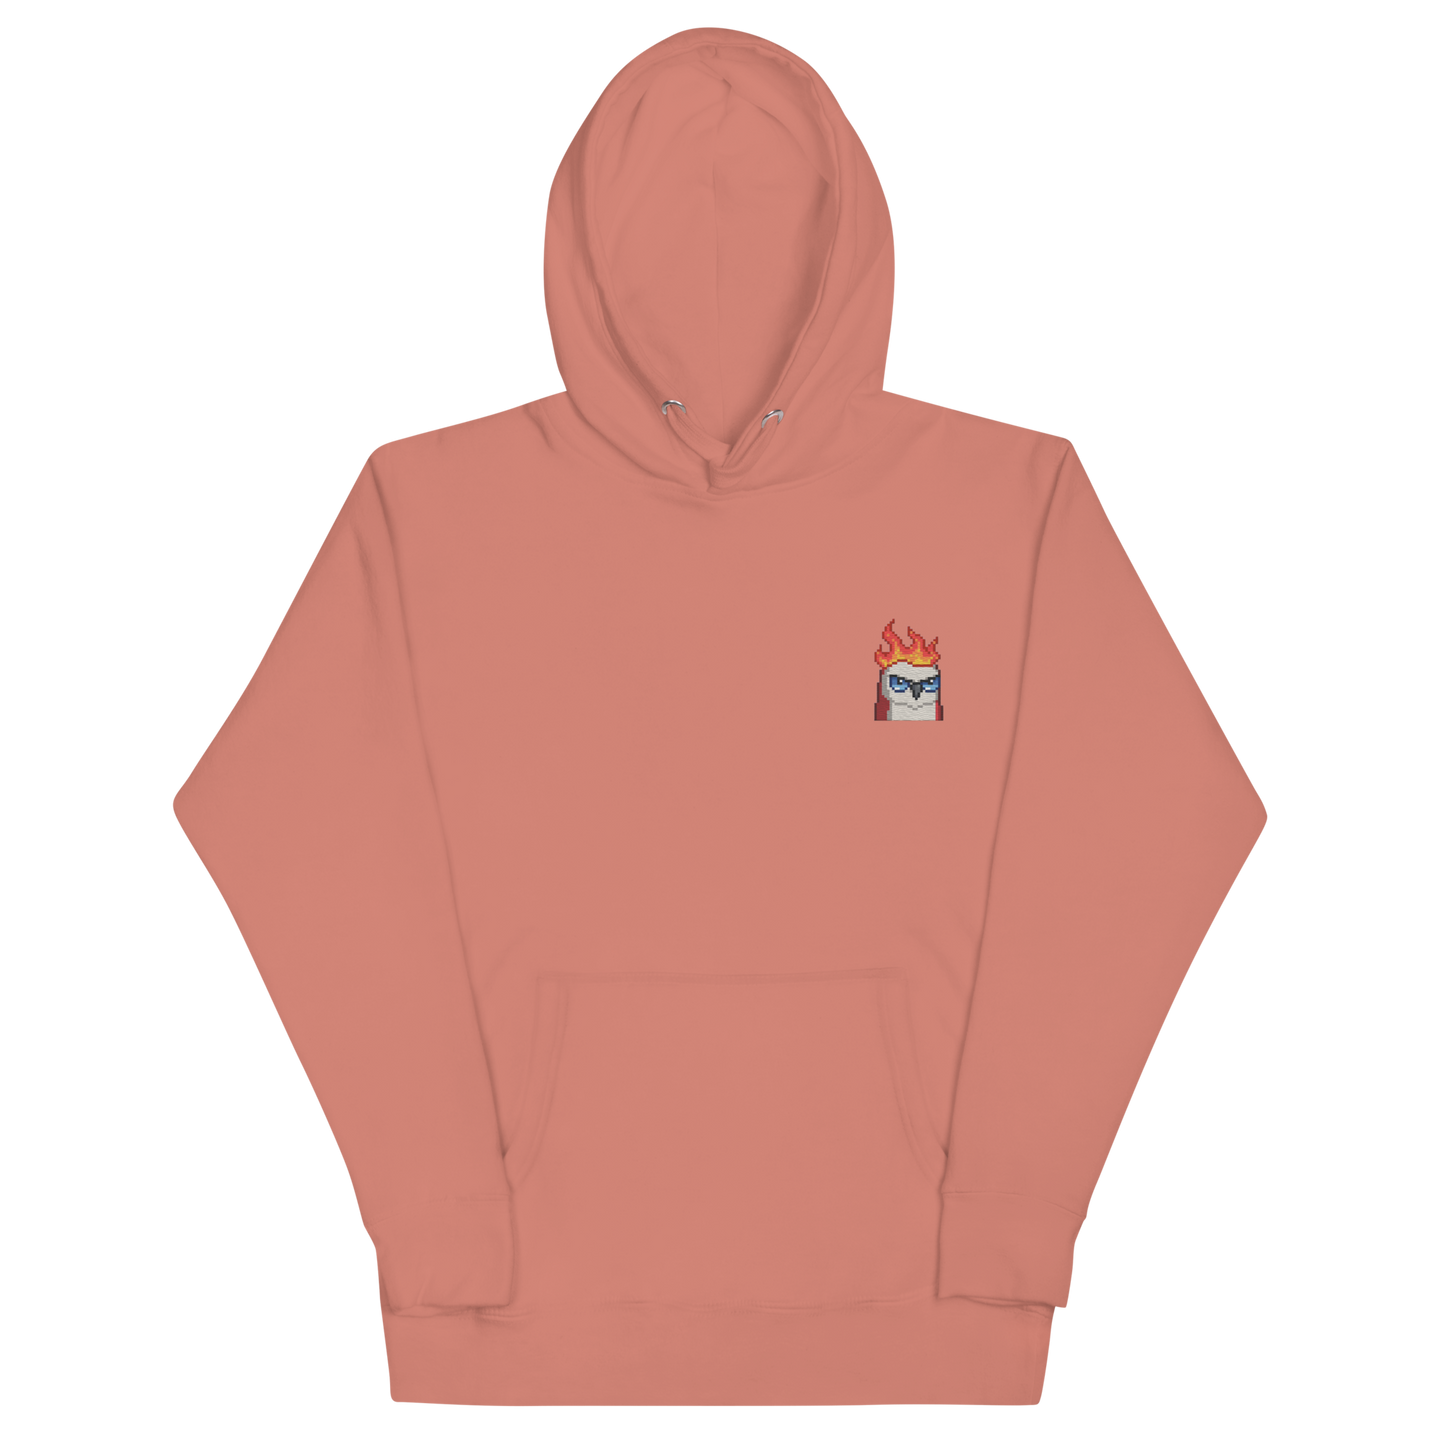 moonbird hoodie